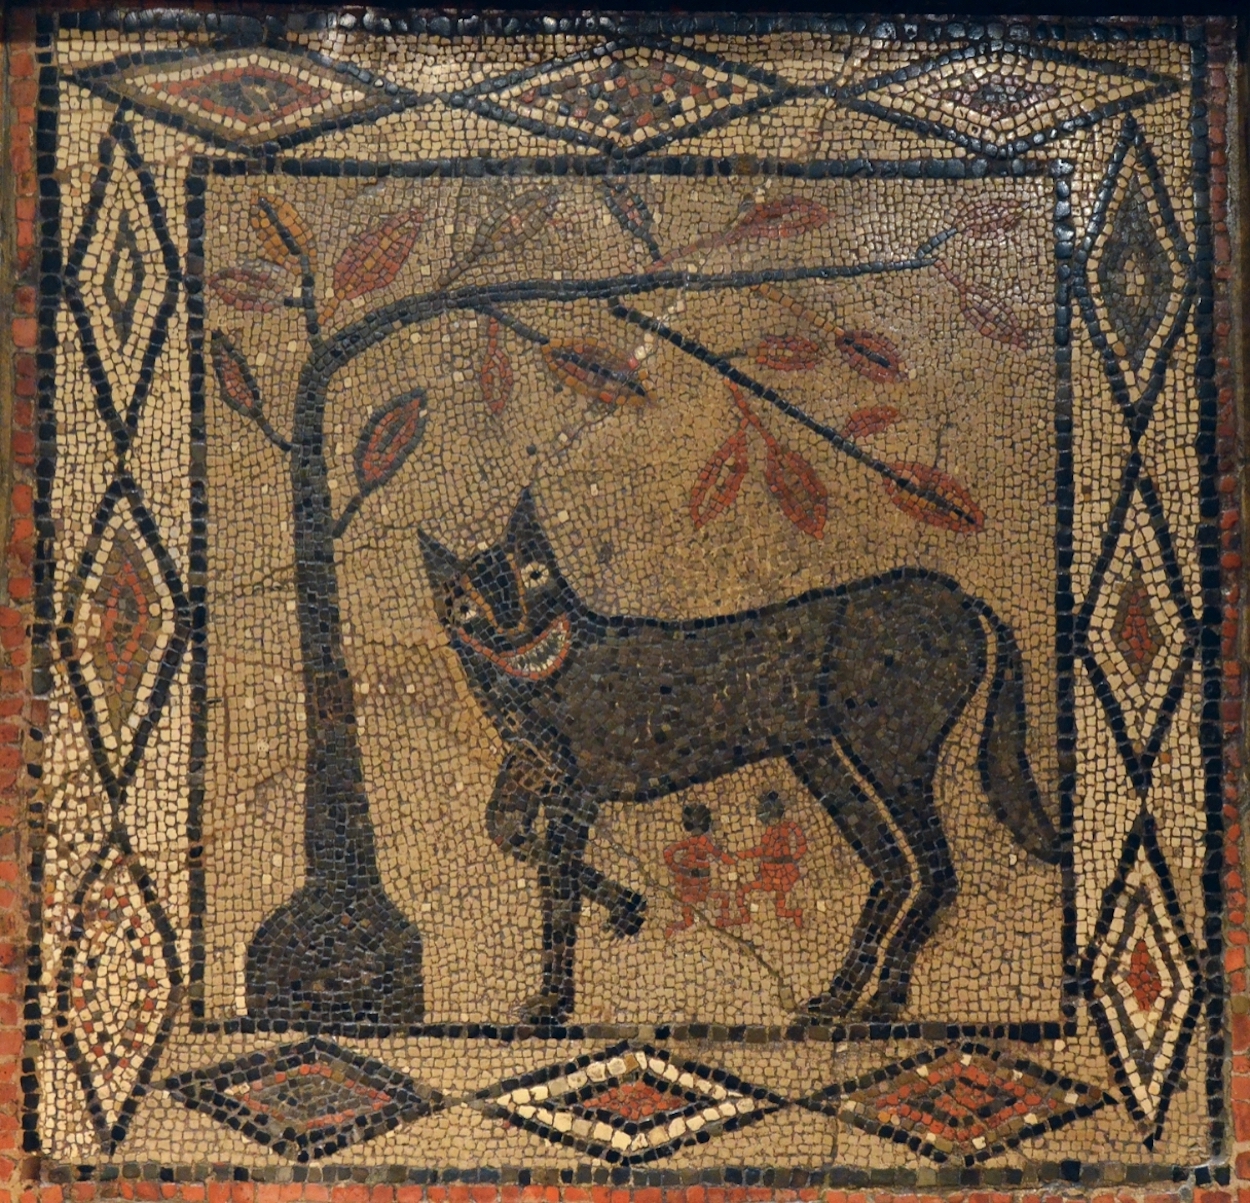 母狼與羅穆盧斯和萊姆斯 by Unknown Artist - 公元300年 